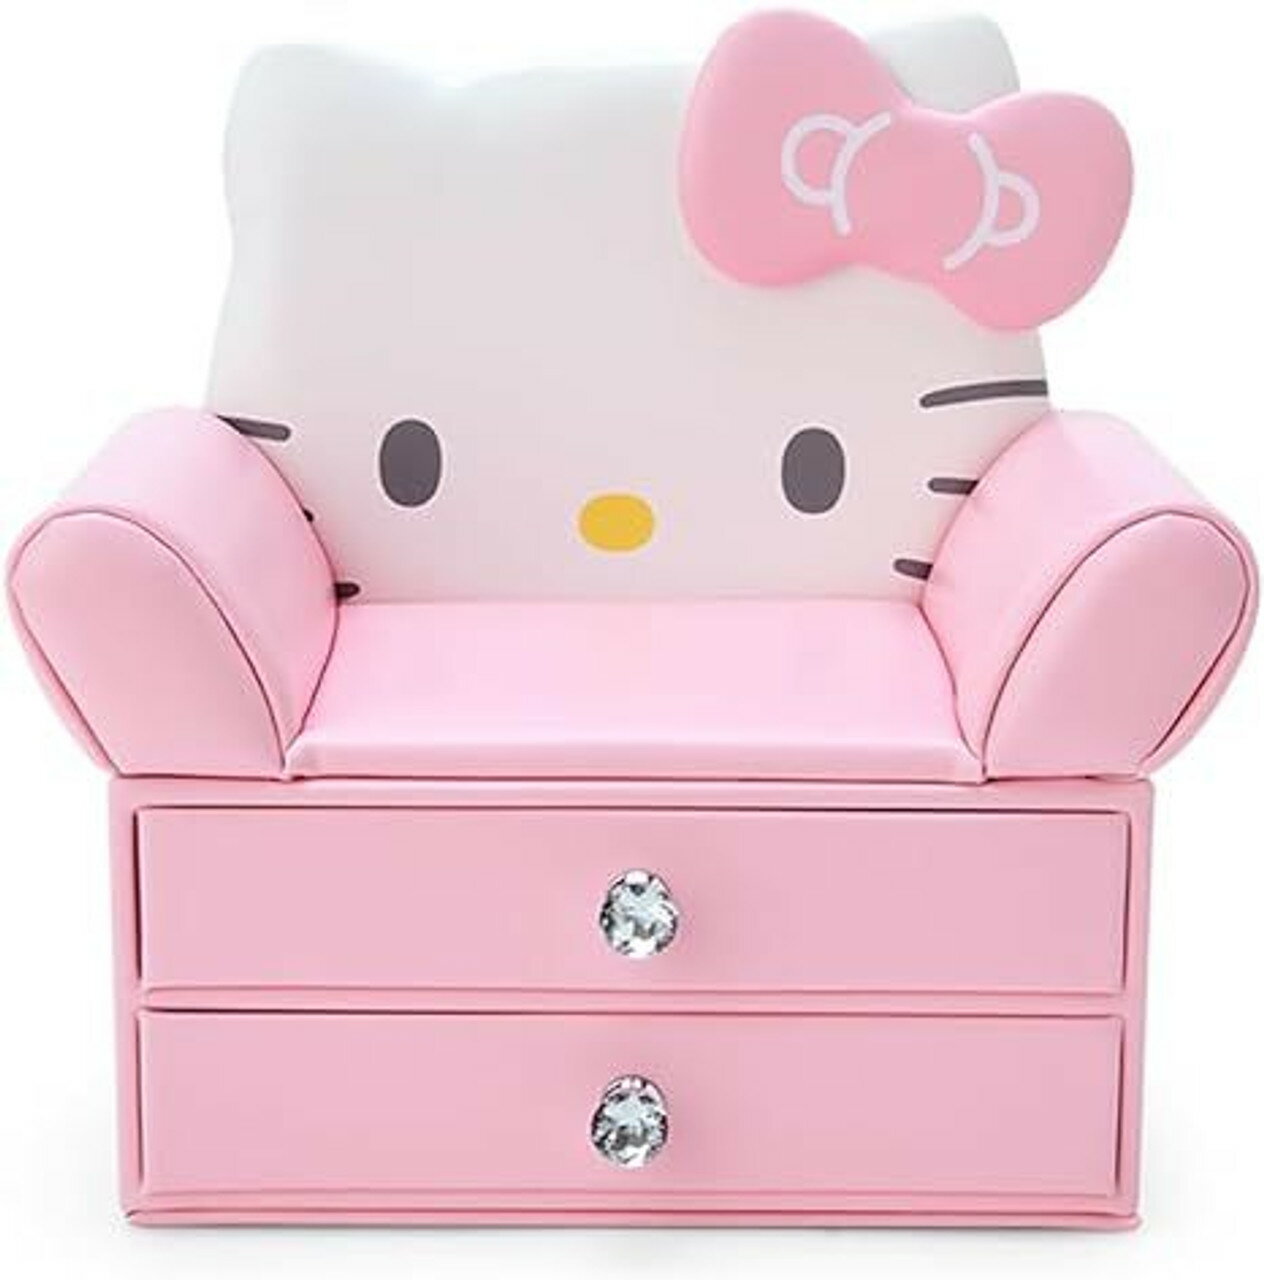 【震撼精品百貨】Hello Kitty 凱蒂貓~日本三麗鷗SANRIO KITTY造型沙發雙層飾品收納盒*89636